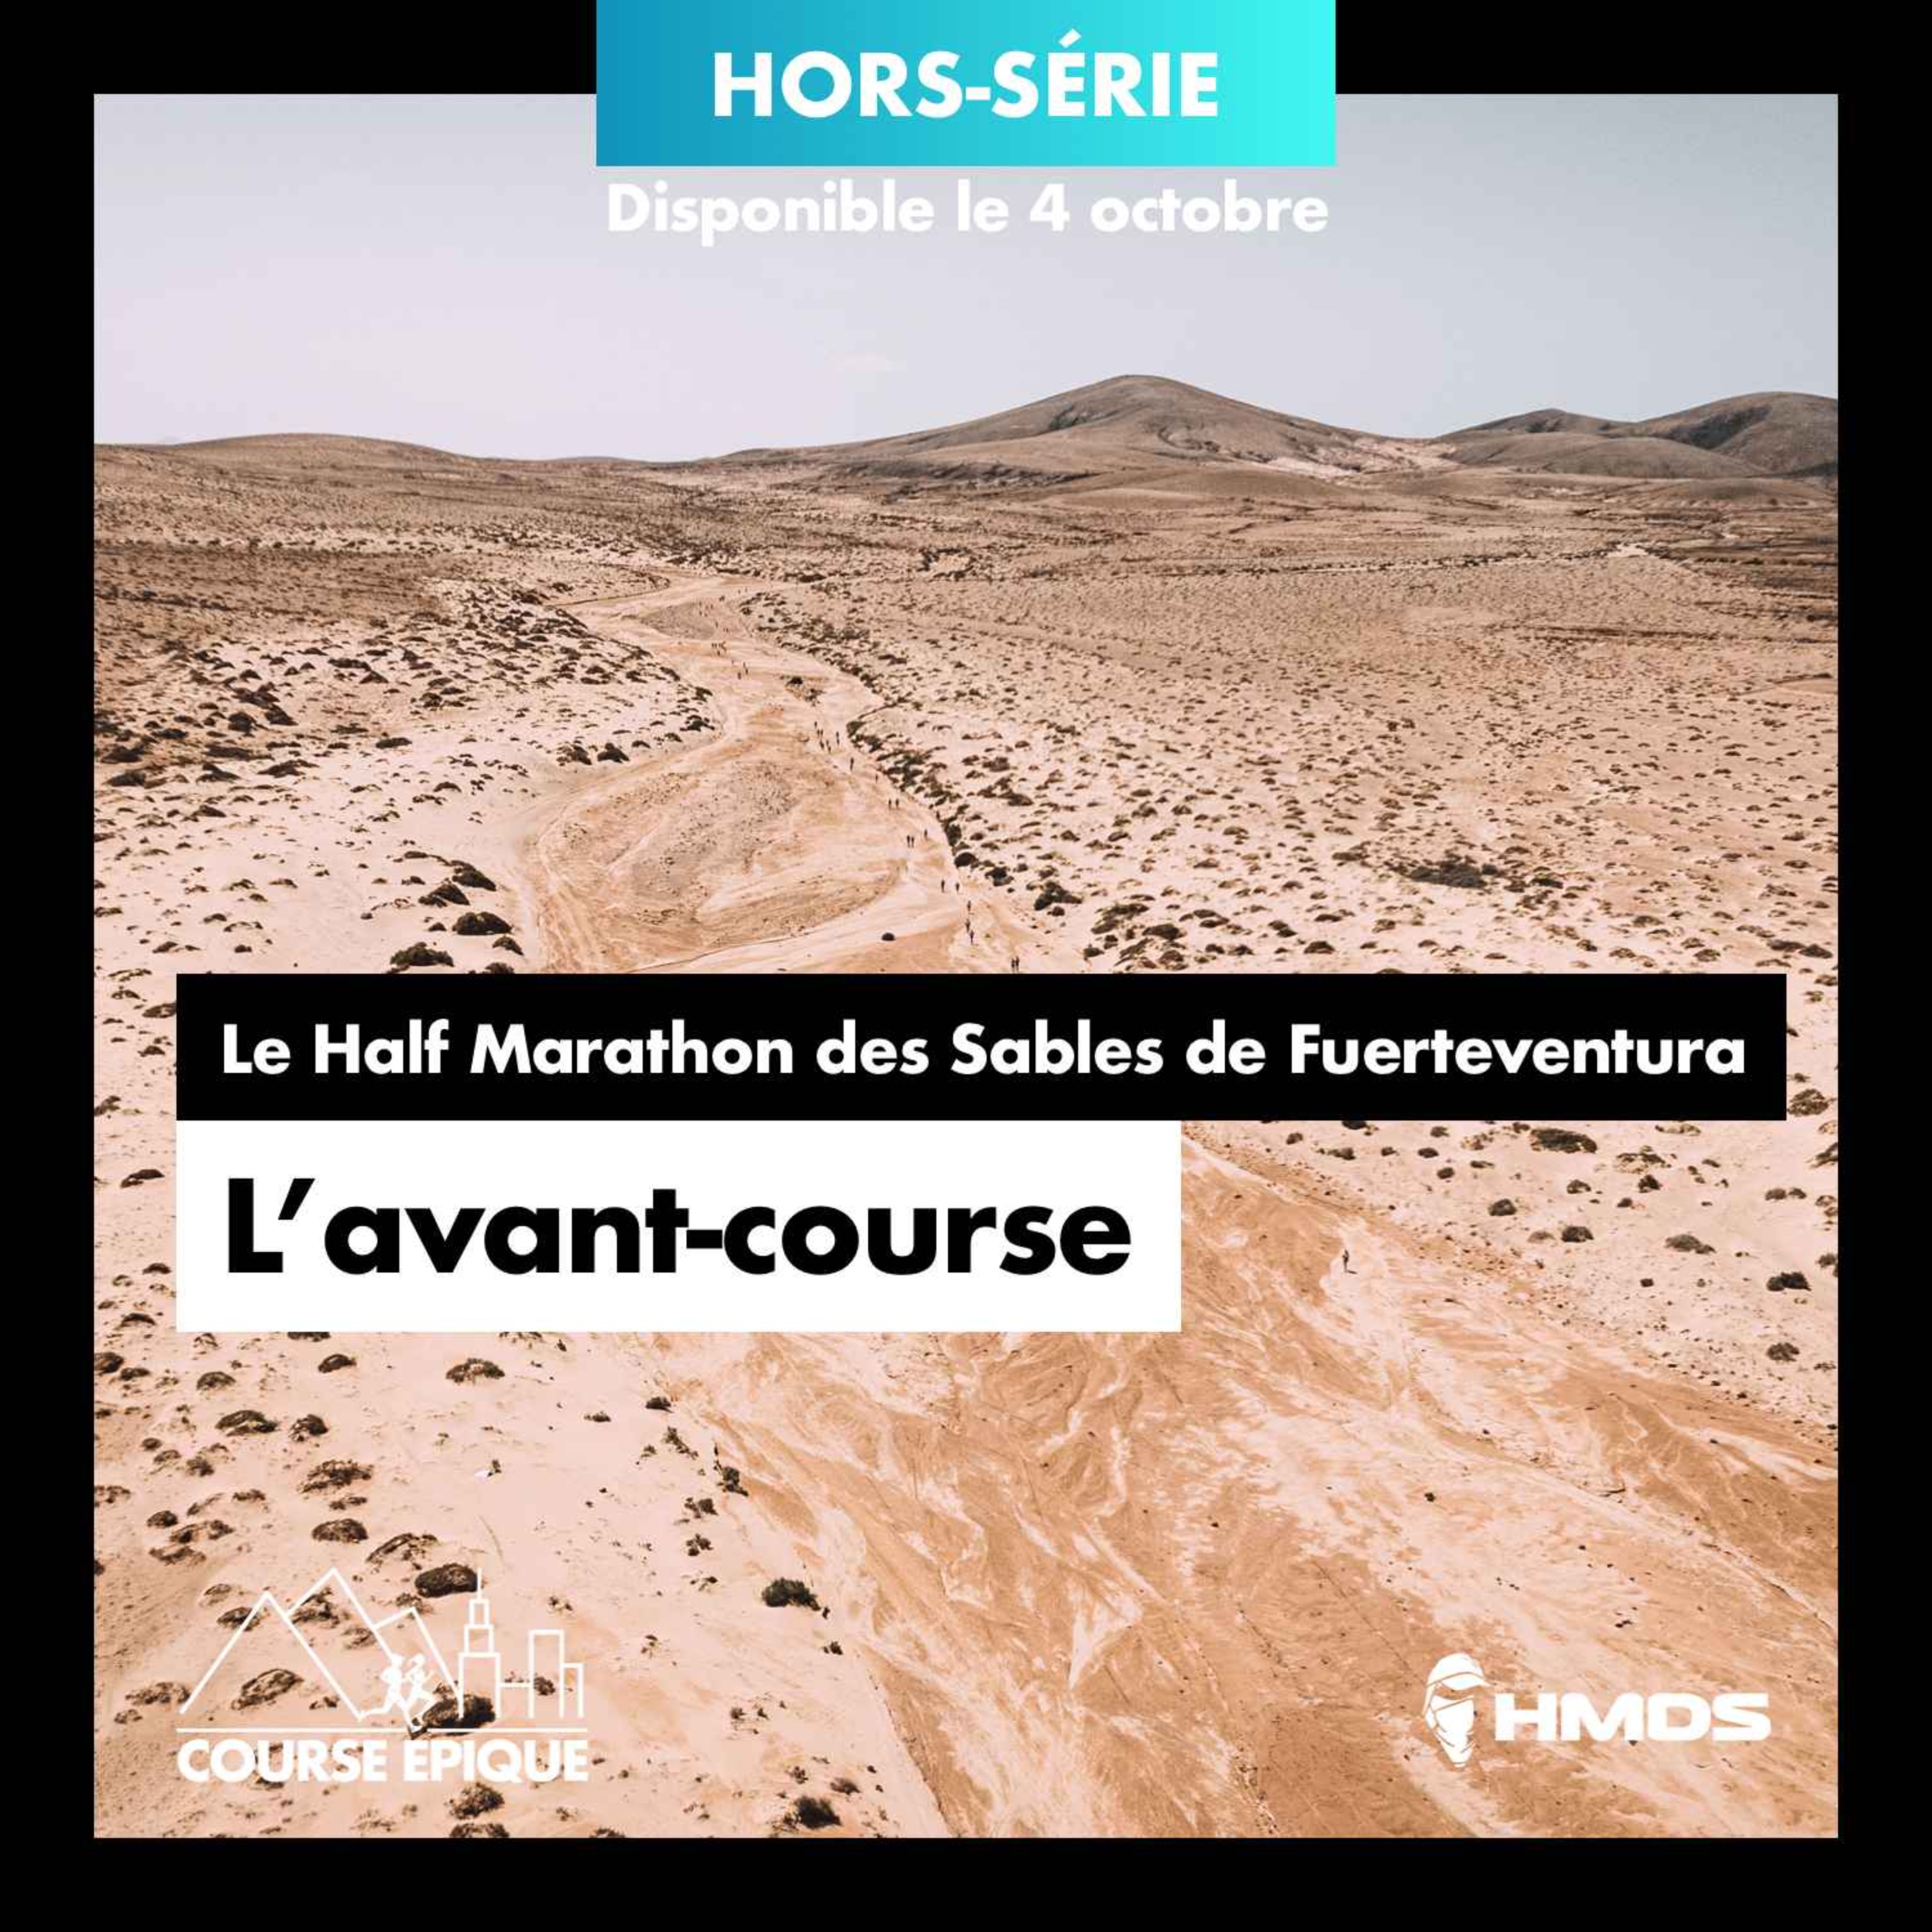 [Hors-série] L'avant-course - Le Half Marathon des Sables de Fuerteventura avec Marine Lorphelin, Hélène Cloet et Major Mouvement